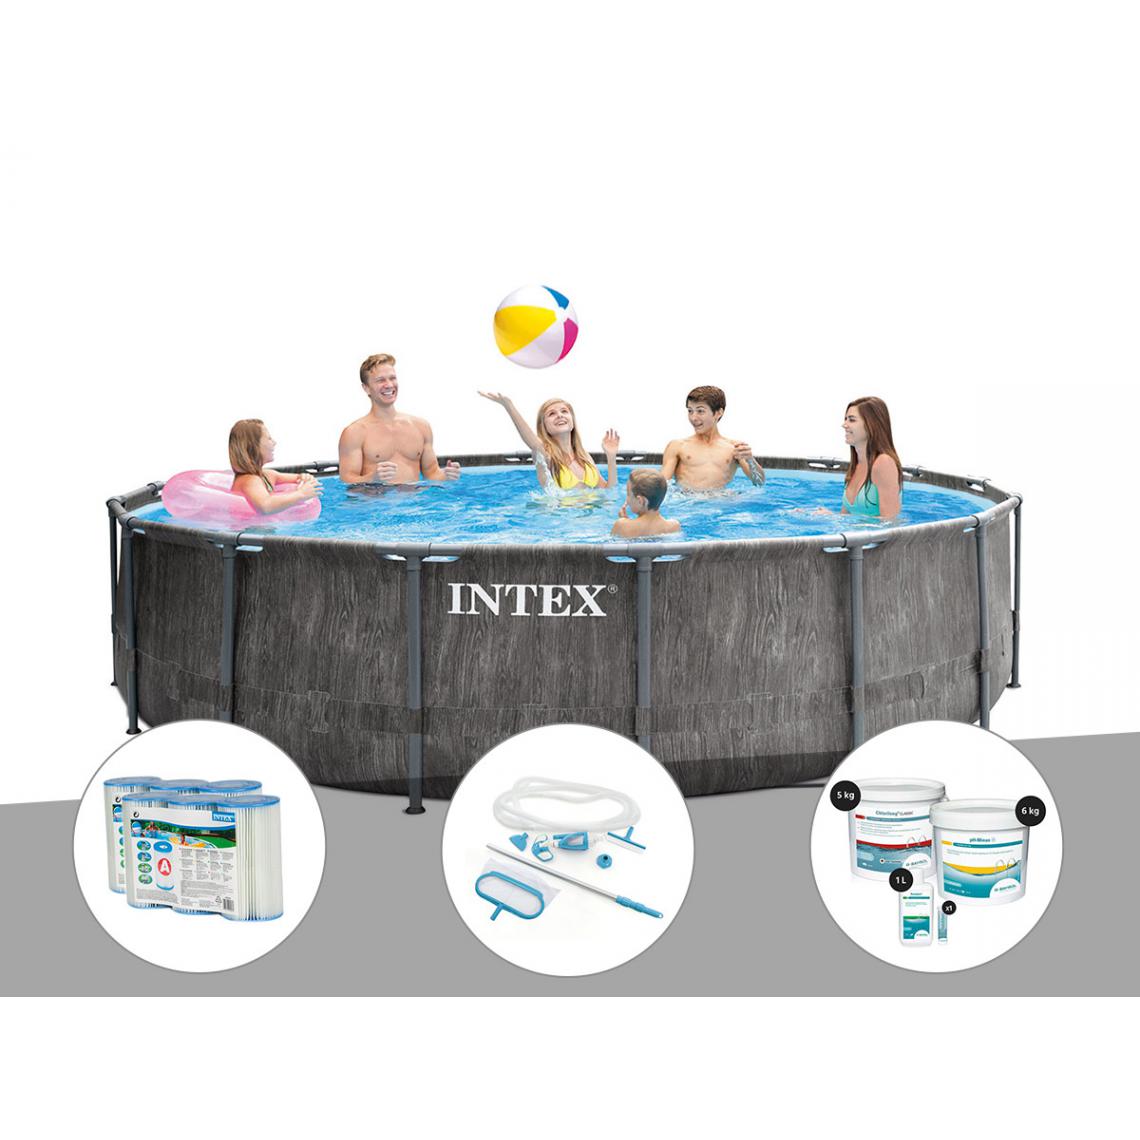 Intex - Kit piscine tubulaire Intex Baltik ronde 4,57 x 1,22 m + 6 cartouches de filtration + Kit d'entretien + Kit de traitement au chlore - Piscine Tubulaire